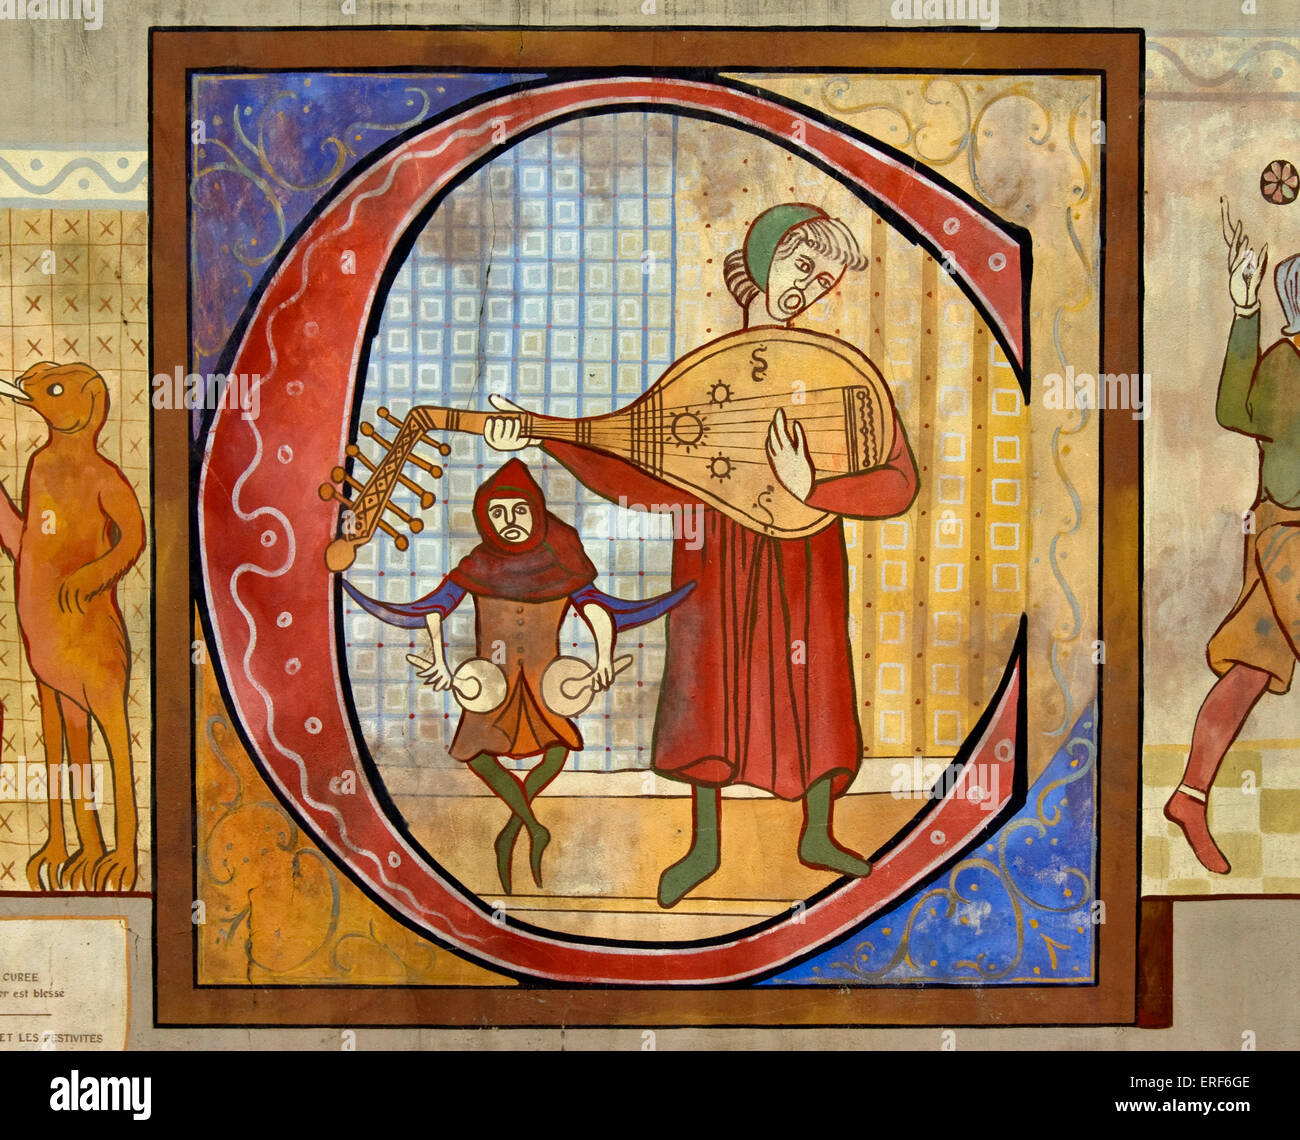 Reproduction d'un dessin montrant un joueur de luth médiéval et d'un batteur jouant nakers (ou nakirs). Lettre capitale illuminée Banque D'Images